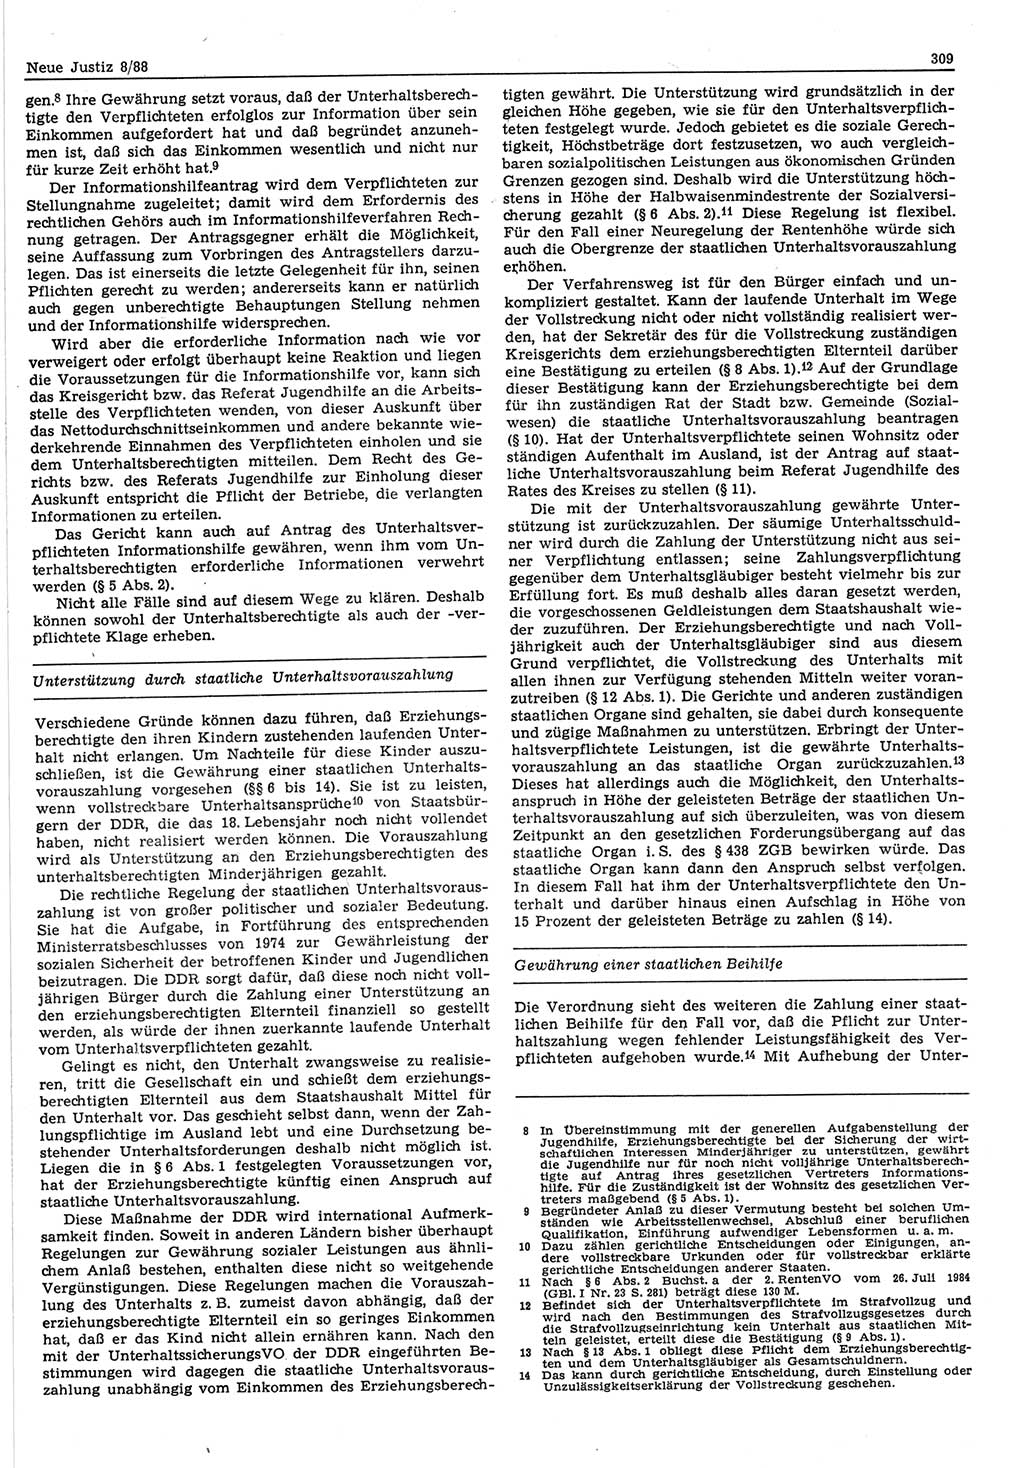 Neue Justiz (NJ), Zeitschrift für sozialistisches Recht und Gesetzlichkeit [Deutsche Demokratische Republik (DDR)], 42. Jahrgang 1988, Seite 309 (NJ DDR 1988, S. 309)